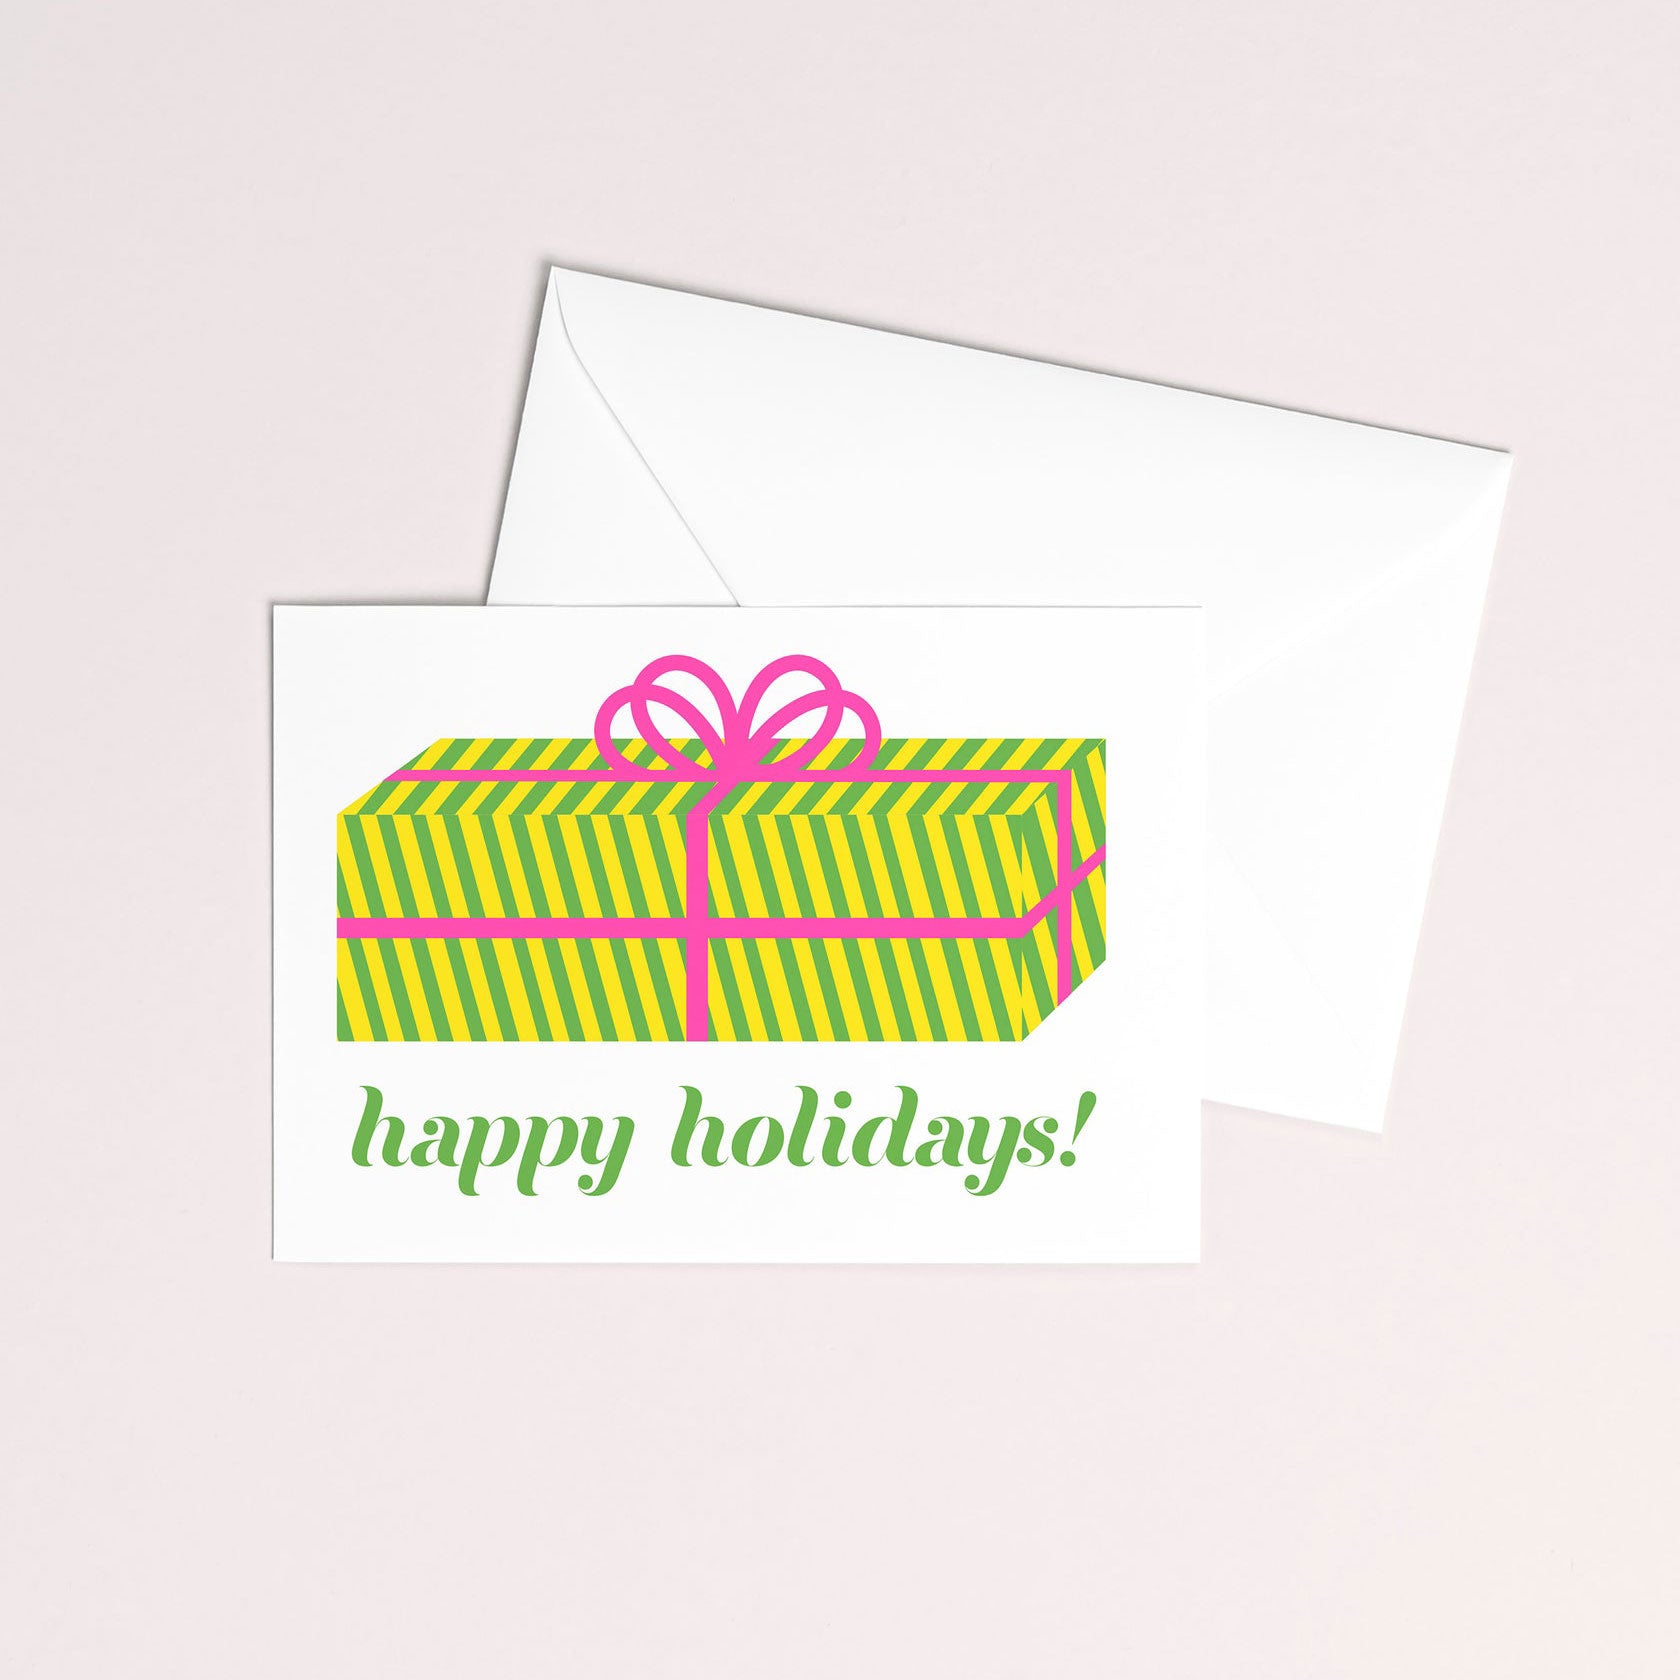 Mezzaluna Studio Risograph Holiday Greeting Card - Stripey Present